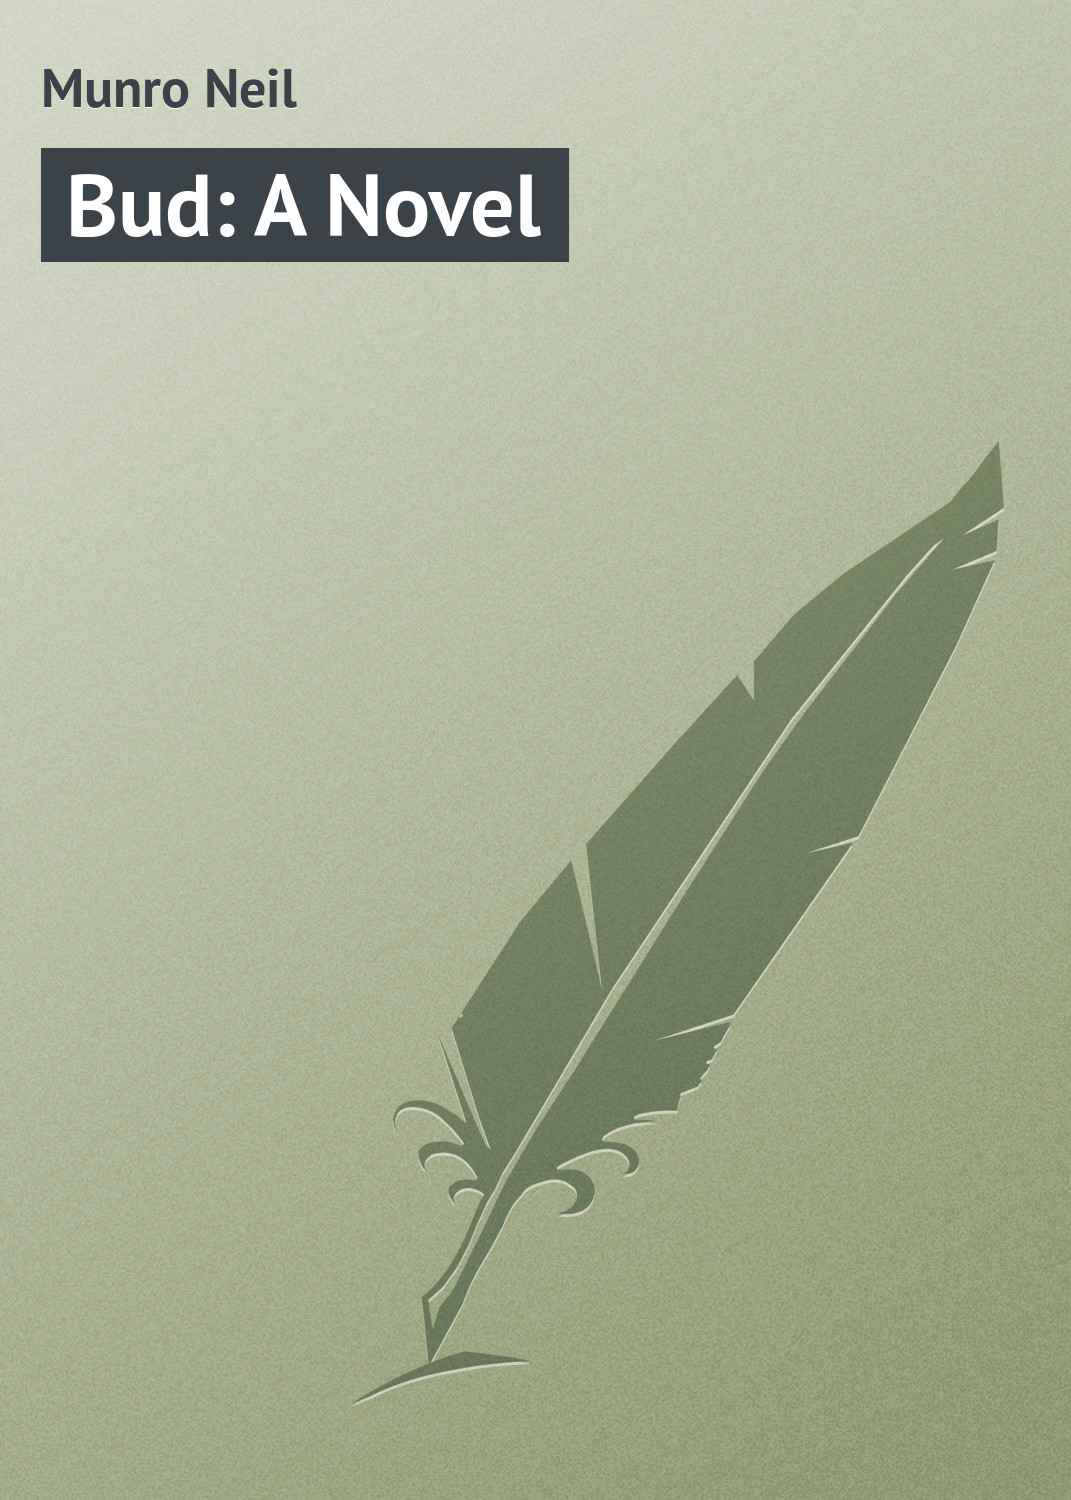 Книга Bud: A Novel из серии , созданная Neil Munro, может относится к жанру Зарубежная классика. Стоимость электронной книги Bud: A Novel с идентификатором 23165043 составляет 5.99 руб.